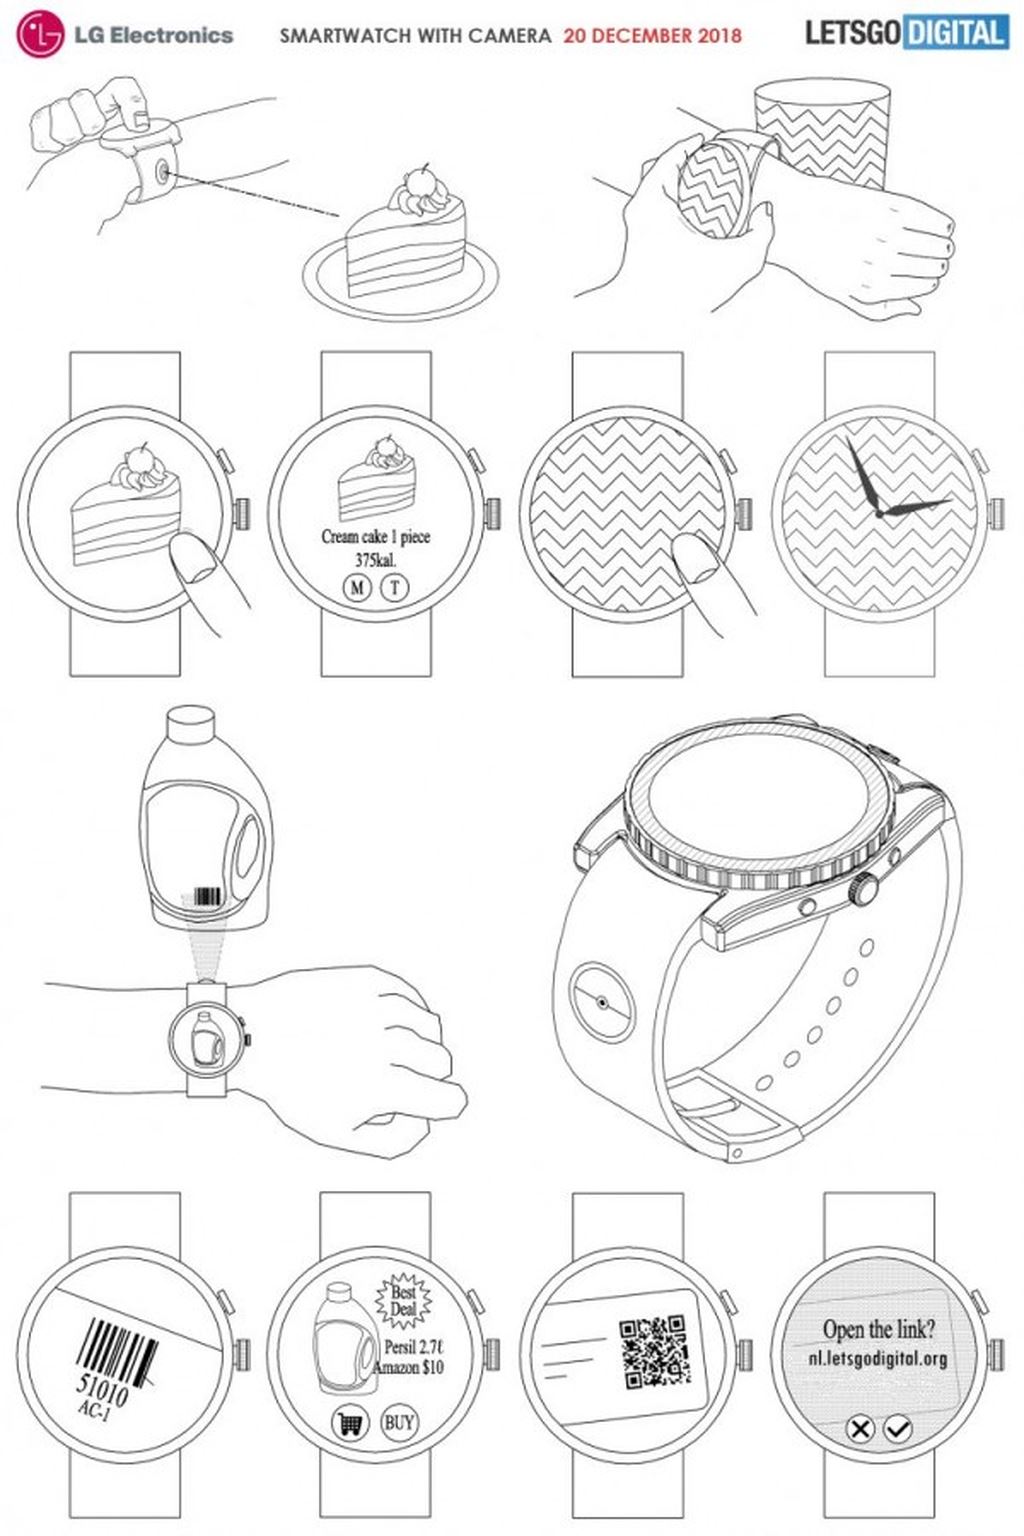 LG đăng kí bản quyền smartwatch được tích hợp camera ảnh 3